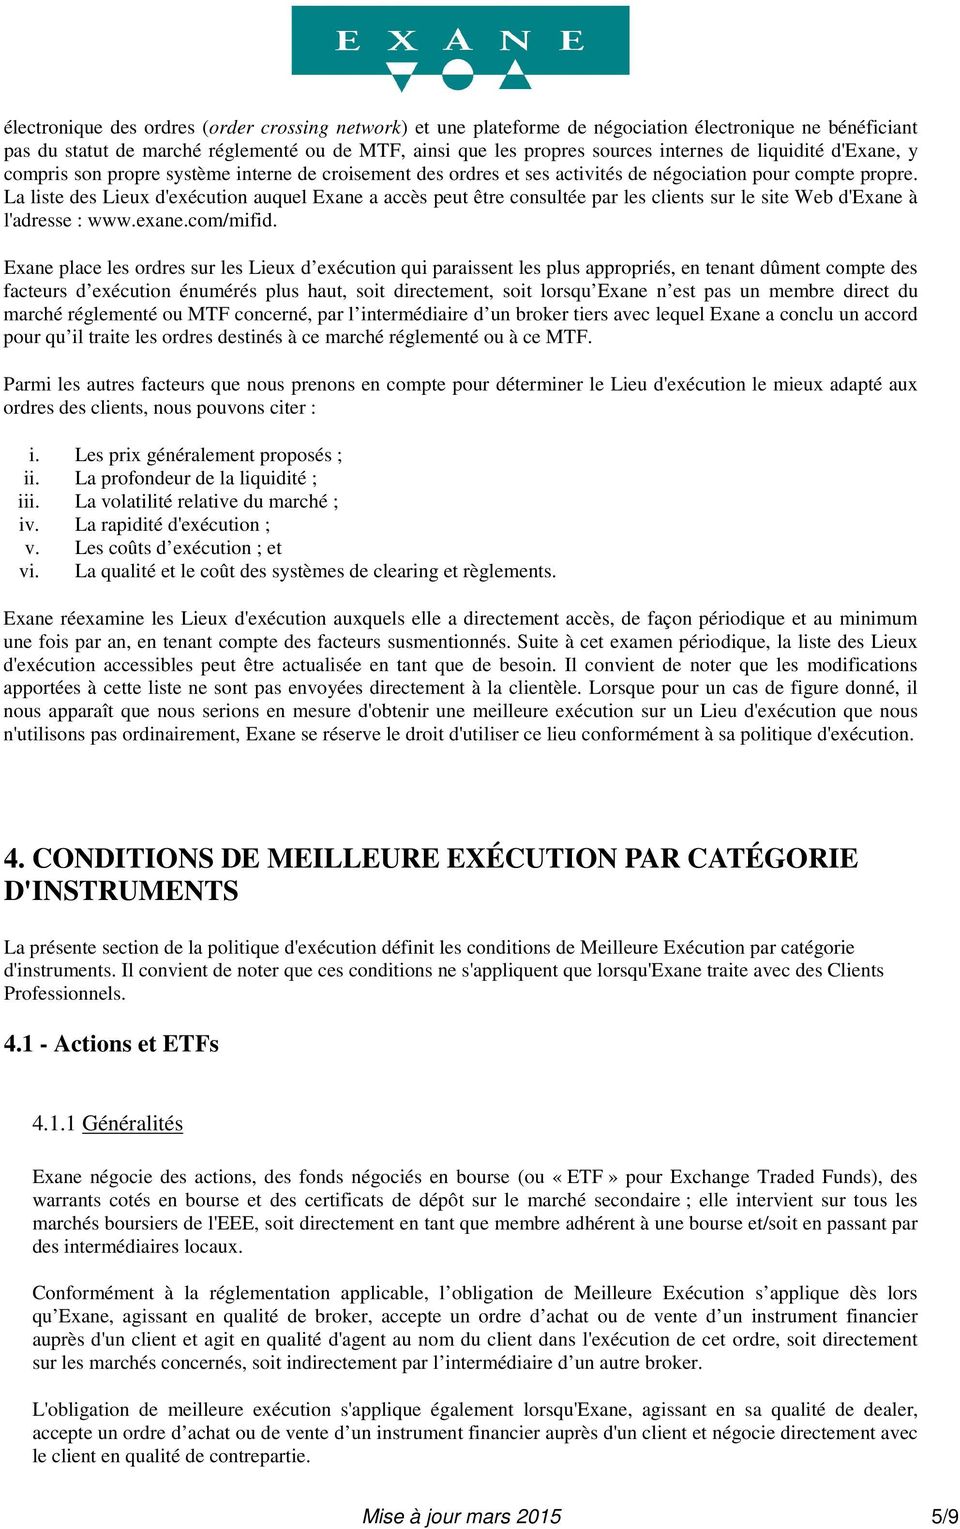 La liste des Lieux d'exécution auquel Exane a accès peut être consultée par les clients sur le site Web d'exane à l'adresse : www.exane.com/mifid.